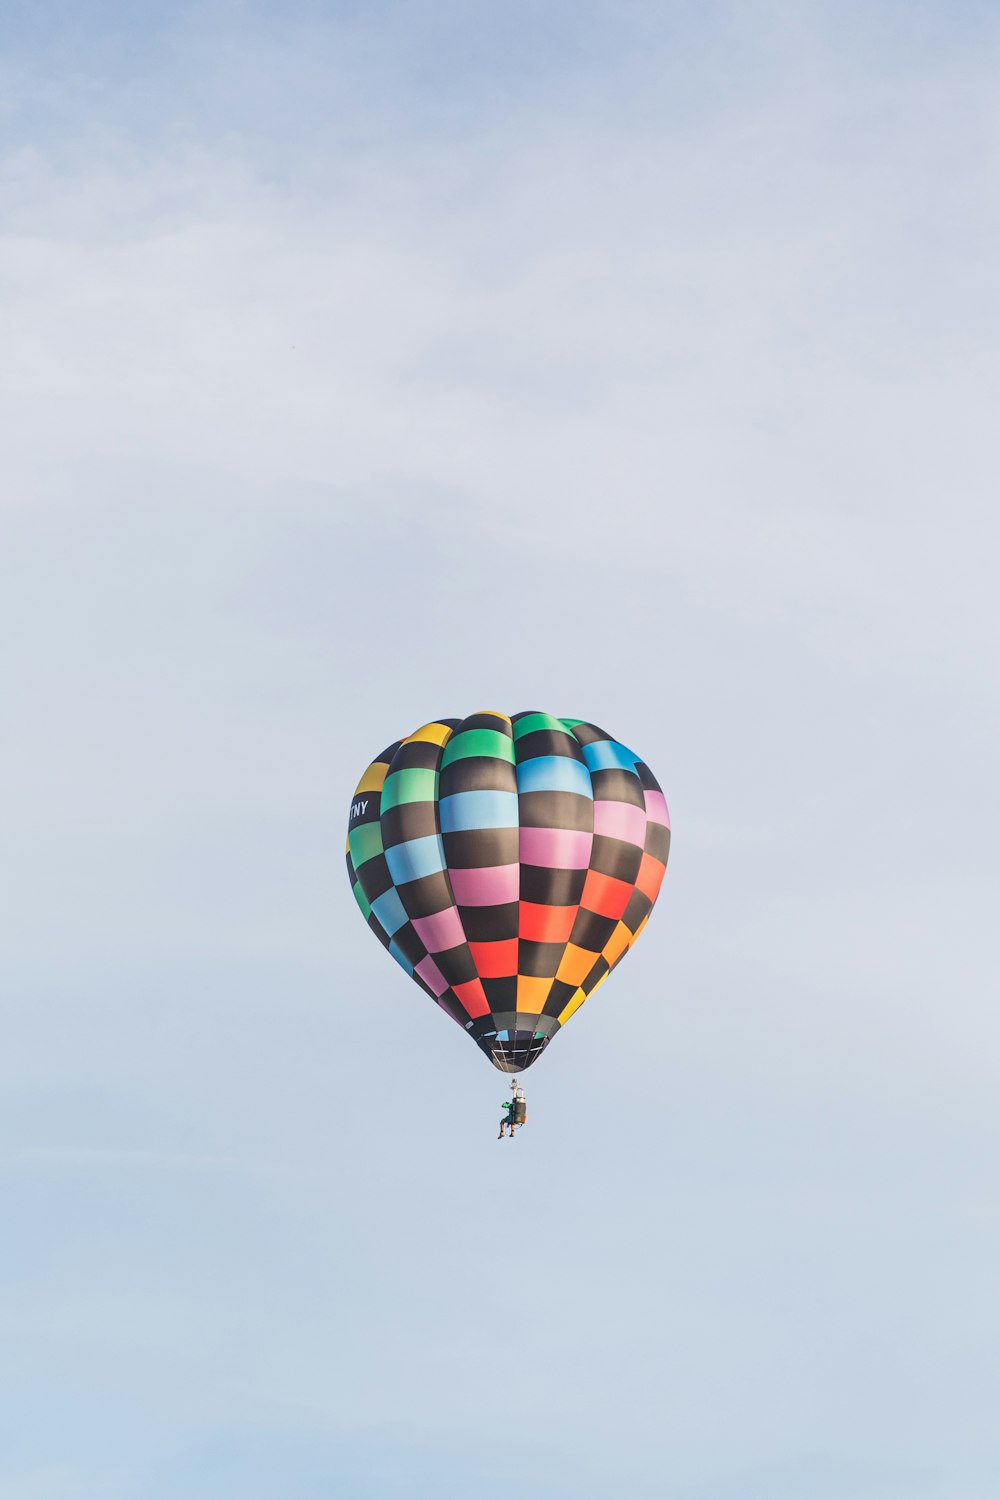 Un colorido globo aerostático volando a través de un cielo azul